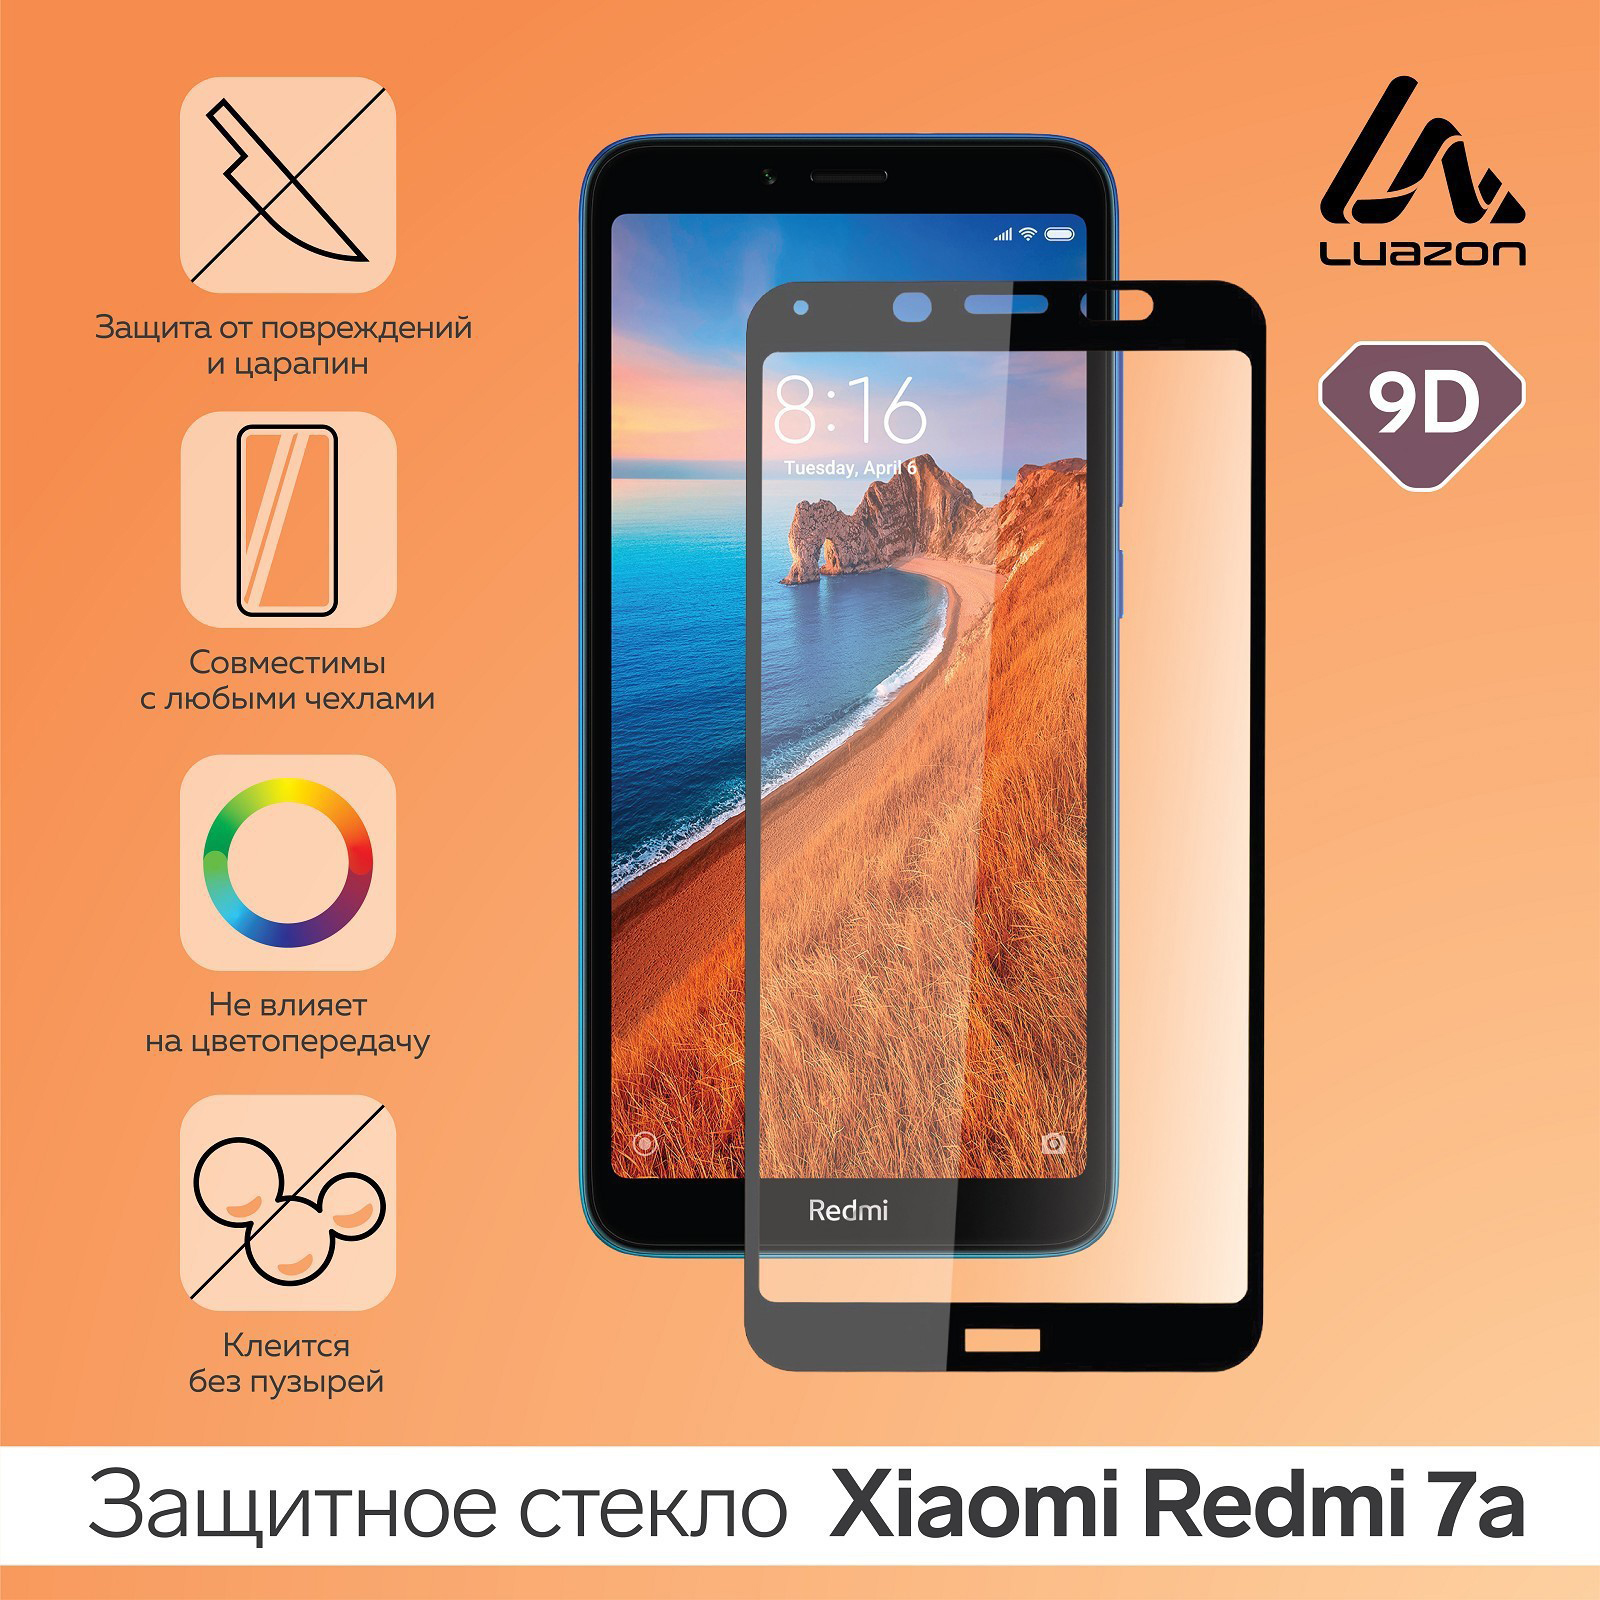 Защитное стекло 9D LuazON для Xiaomi Redmi 7a, полный клей, 0.33 мм, 9Н, черный